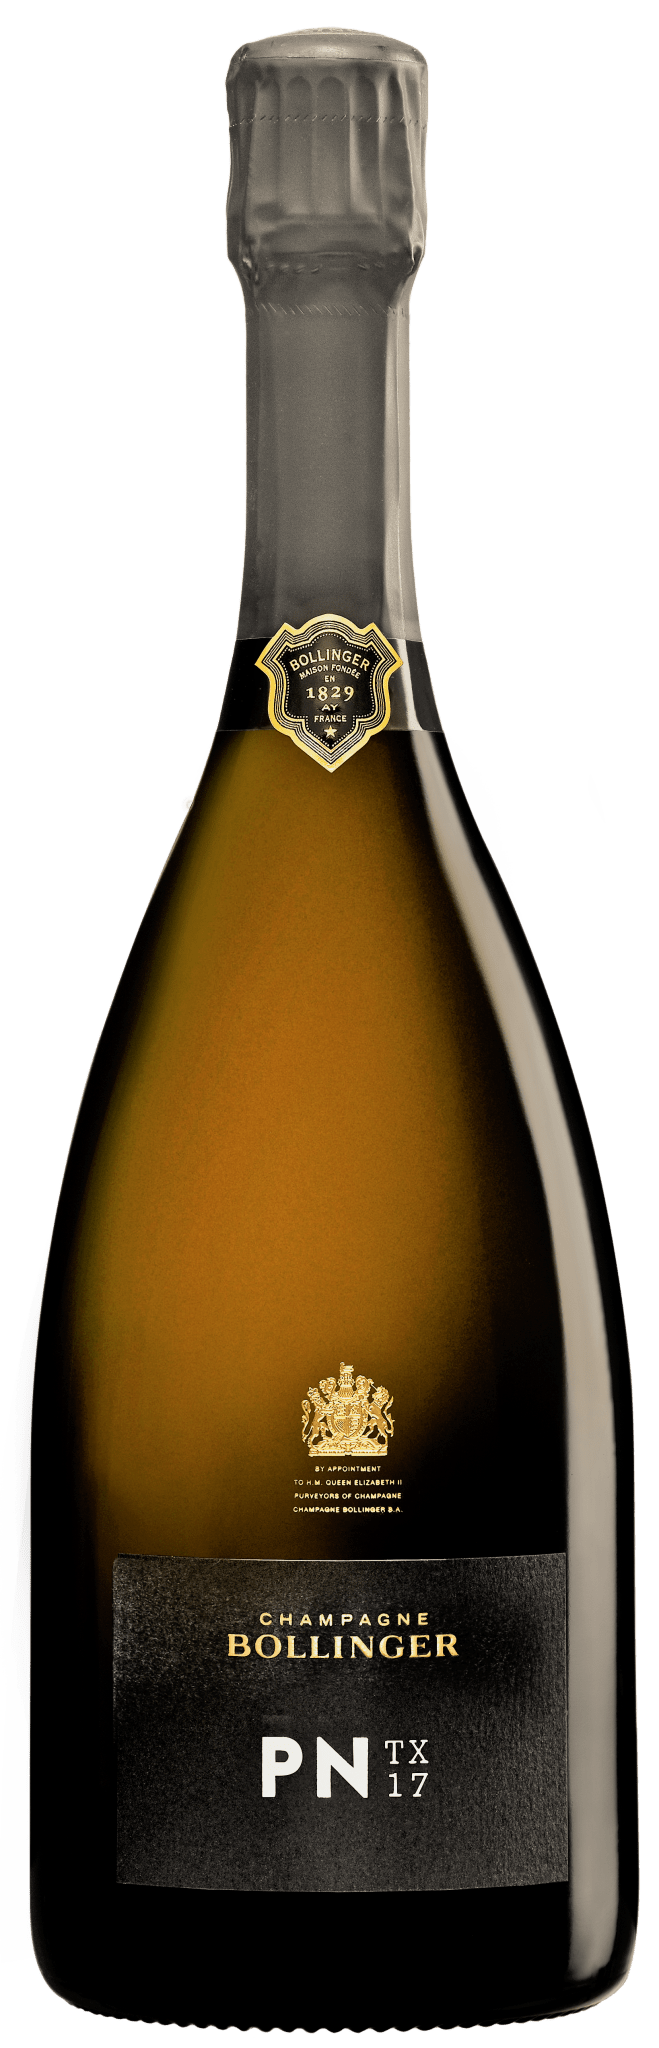 Billede af Champagne Bollinger, Champagne PN TX17 Blanc de Noirs Extra Brut, 2017